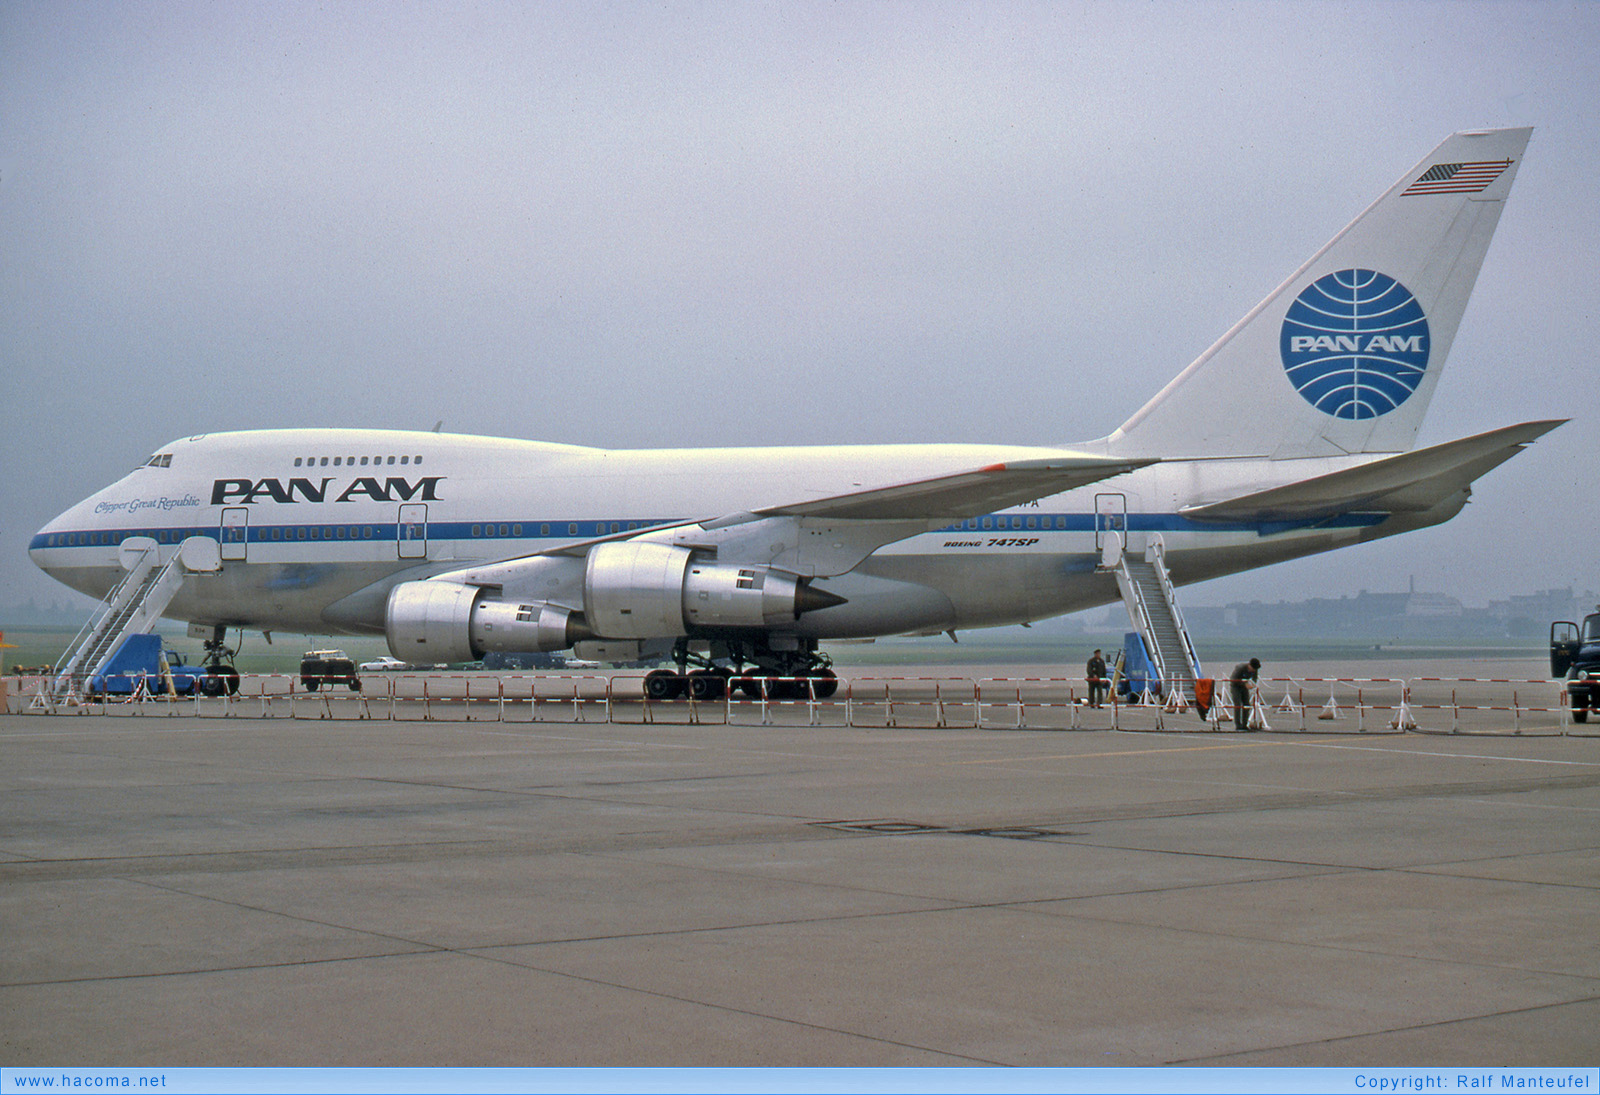 Photo of N534PA - Pan Am Clipper Great Republic - Berlin Tempelhof Airport - Sep 1976